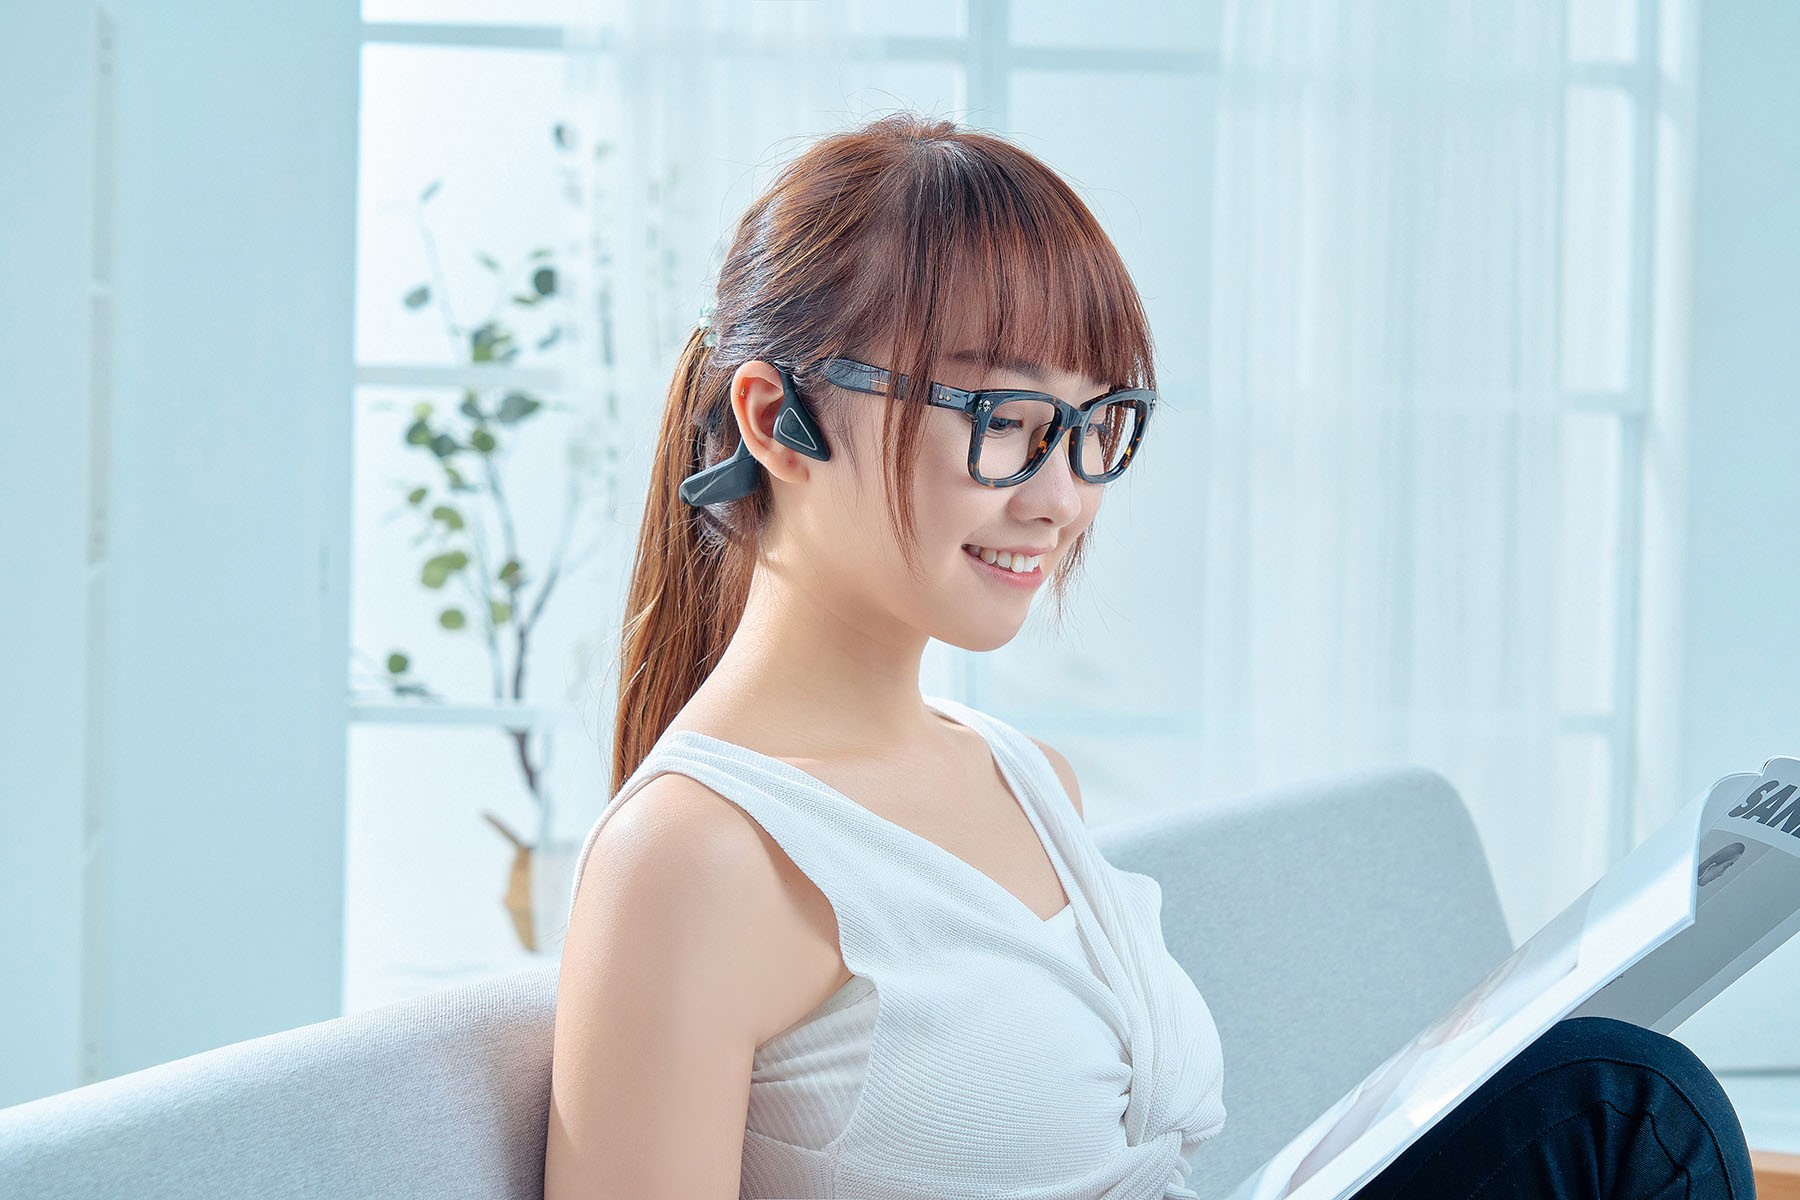 由於 ATH-CC500BT 的佩戴方式是將耳機輕輕掛勾在耳朵的上緣，所以無論是戴著口罩或戴著眼鏡的狀態都不會因交疊在一起而產生交纏或負擔，同時耳機也很方便戴上或取下。